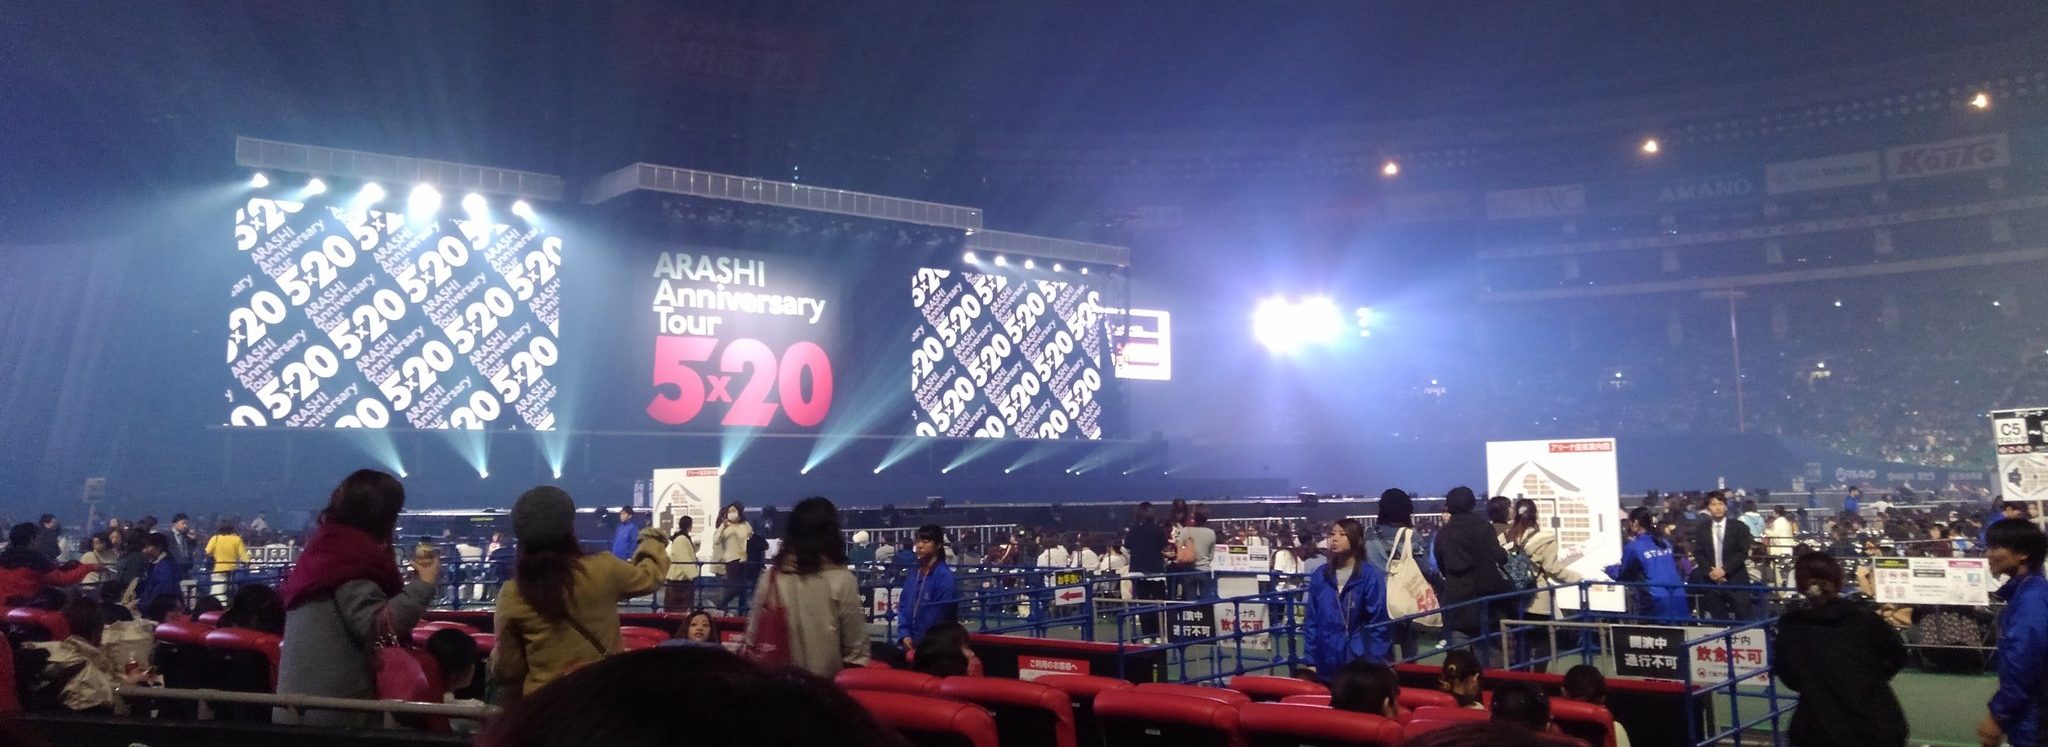 嵐 コンサート 福岡 Arashi Anniversary Tour 5 セトリ 座席 デジチケ Qr ゲート 18 19 ライブ ネタバレ レポ Tlクリップ